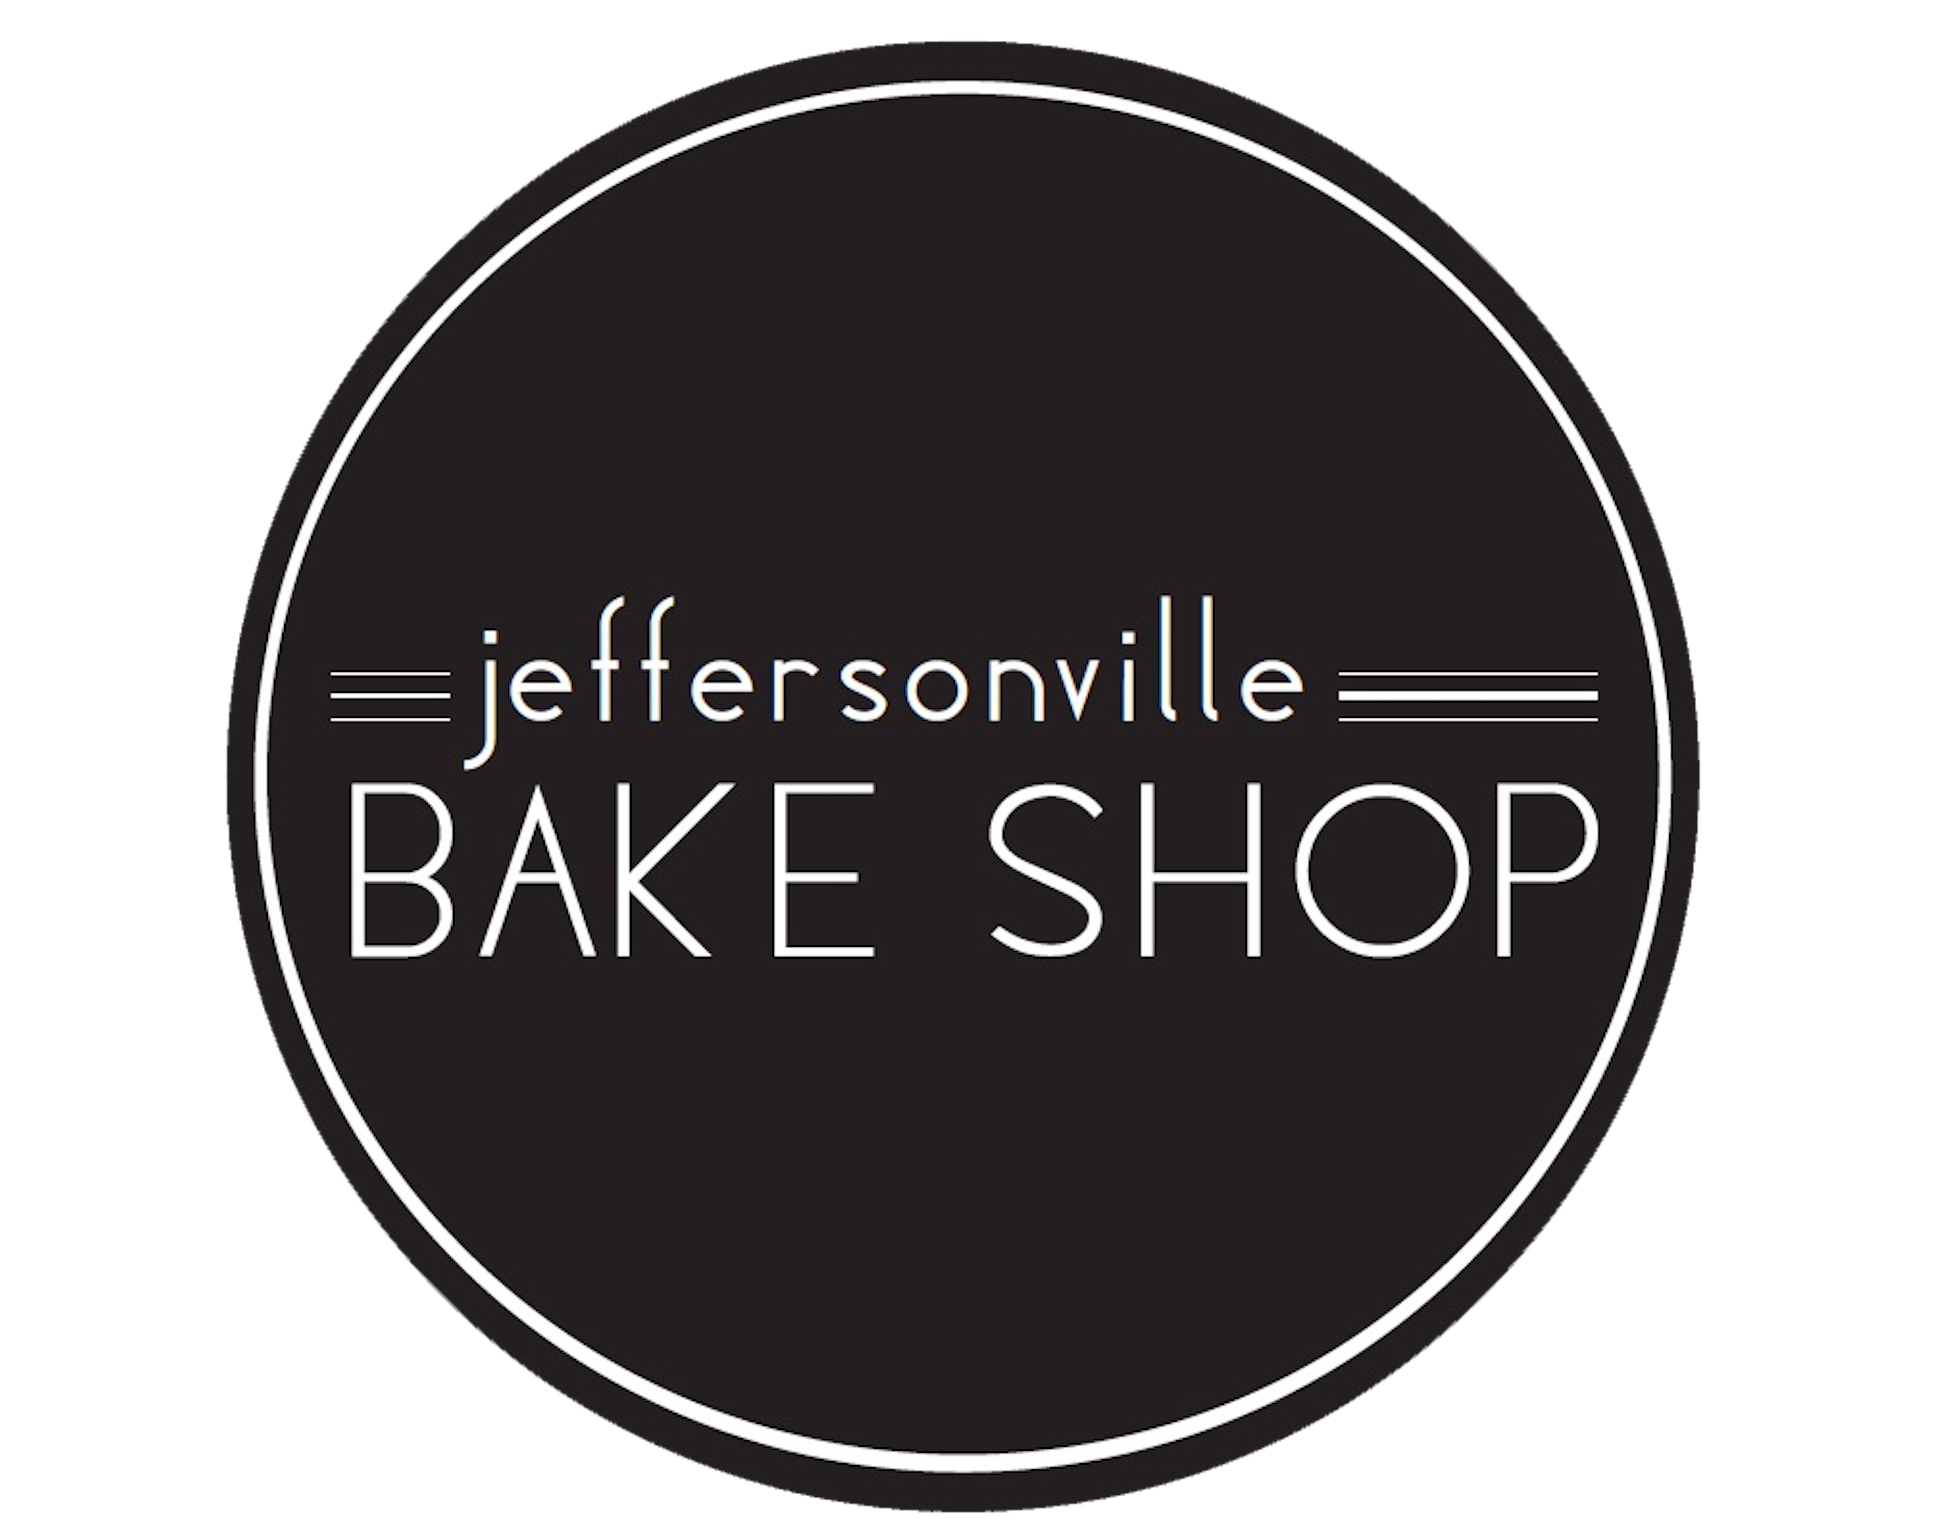 Jeffersonville Bake Shop